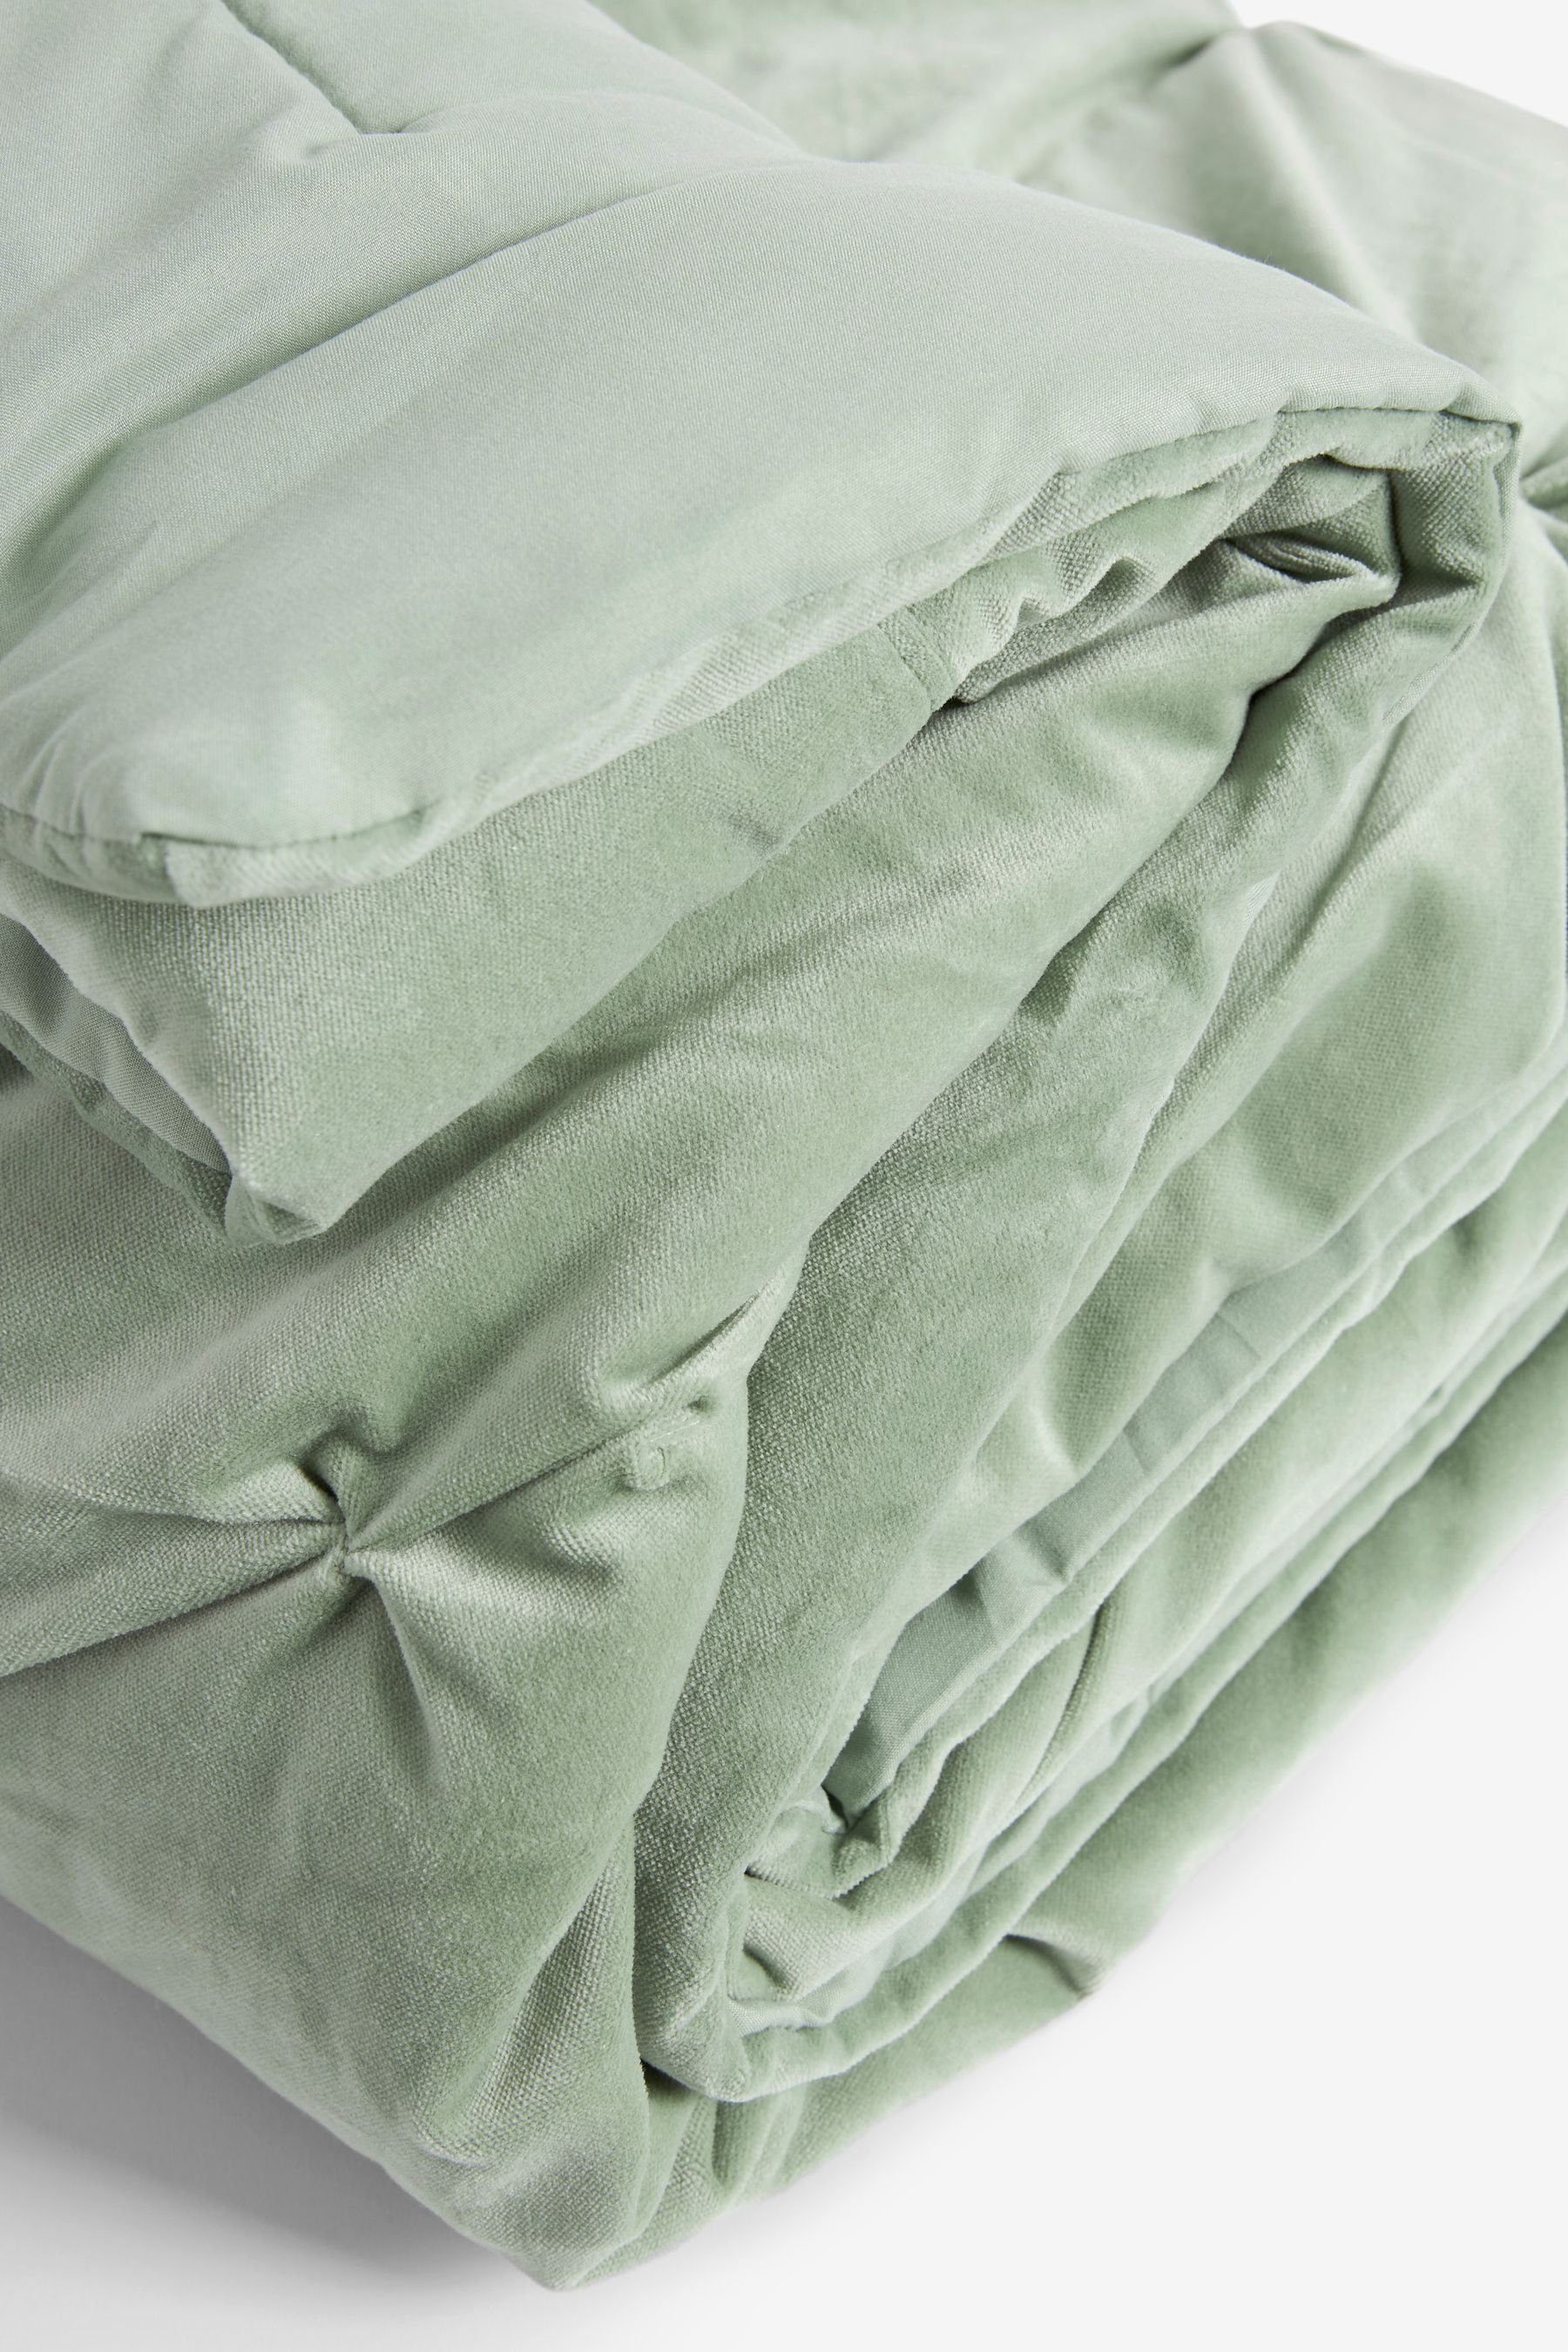 Bettüberwurf Tagesdecke aus Green mit Next Samt Sage V-Falten